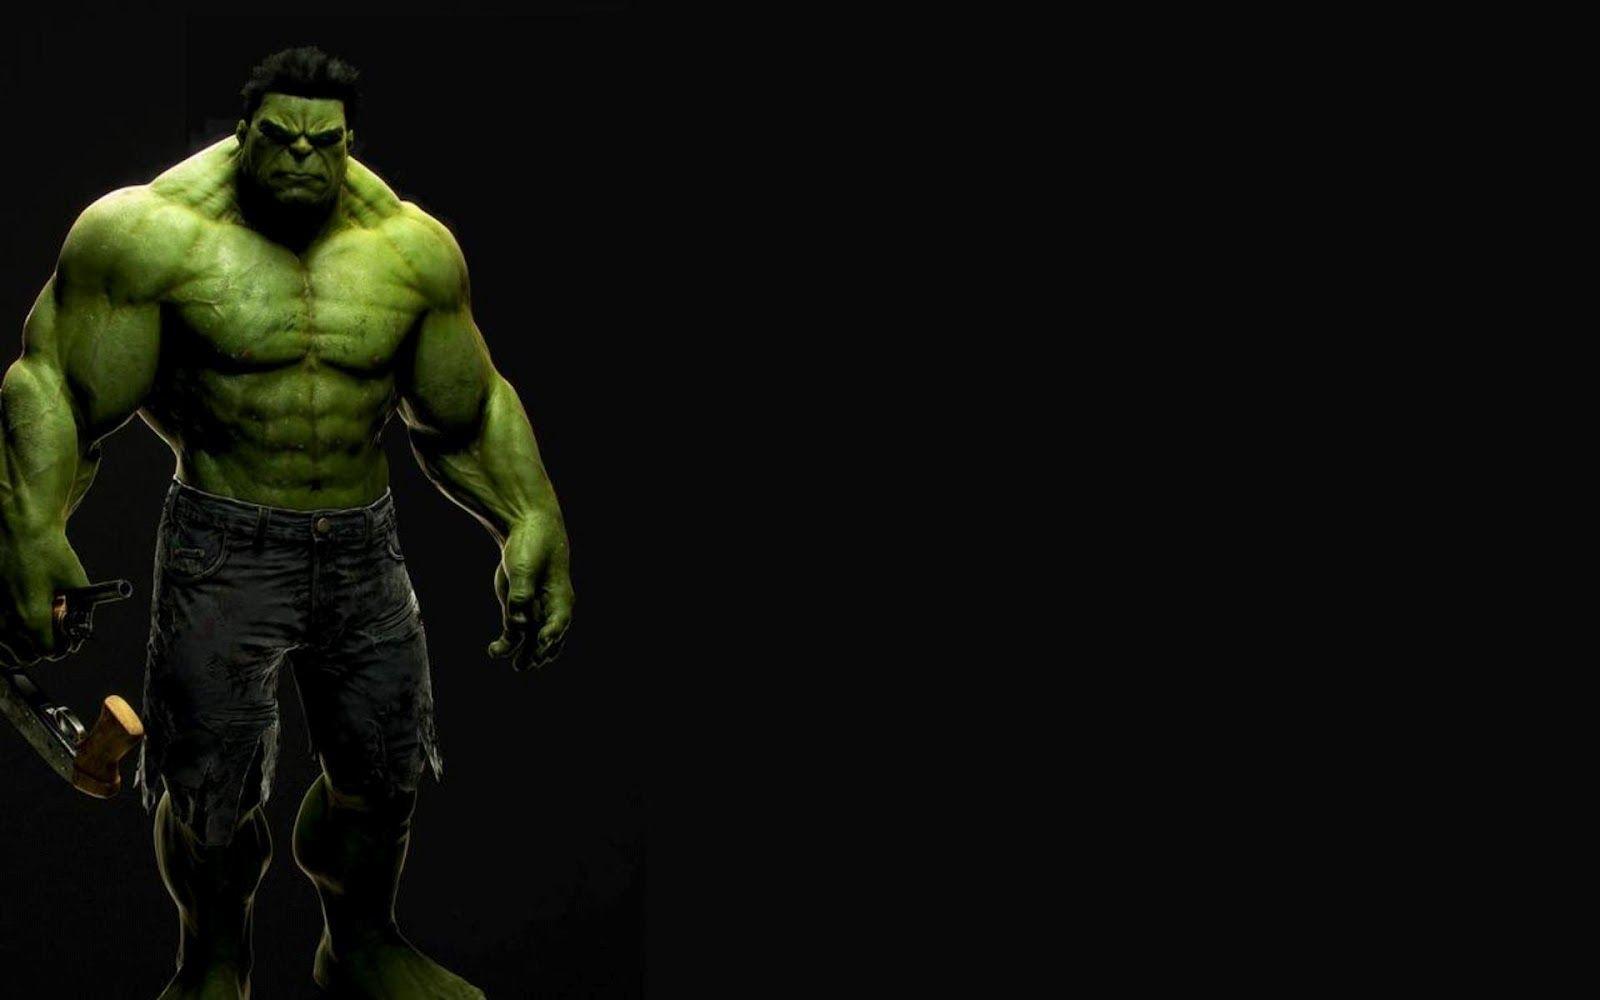 Your Wallpaper: The Incredible Hulk Wallpaper